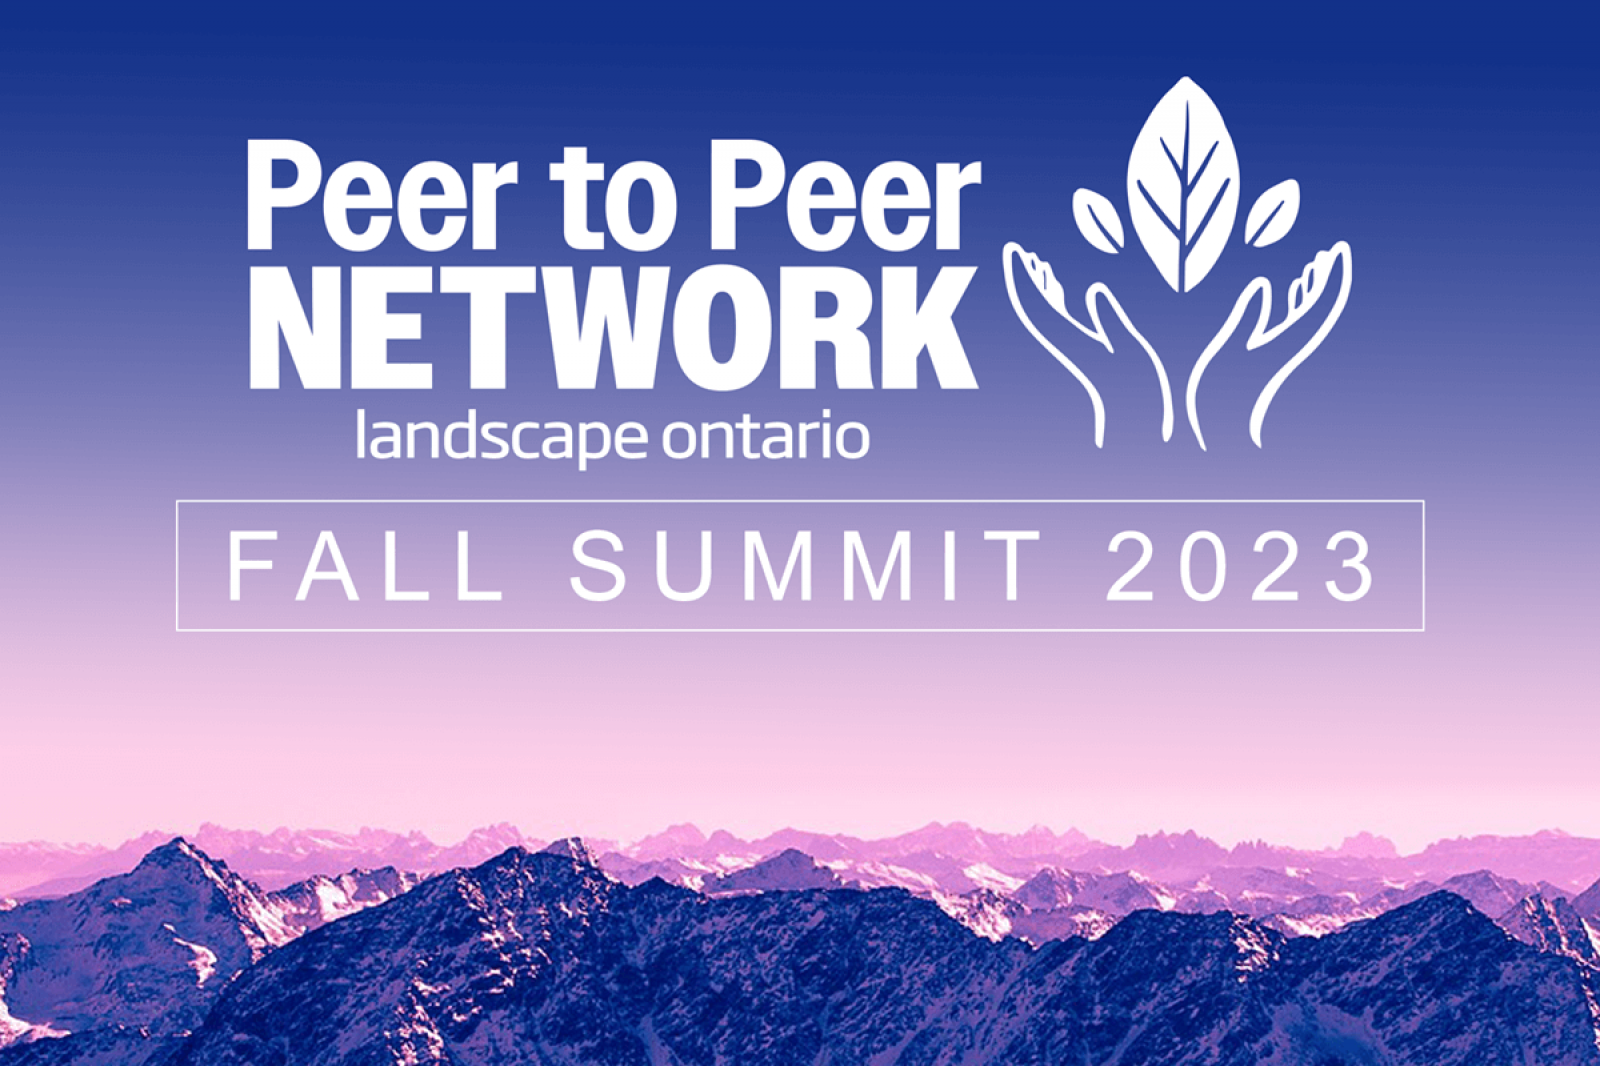 Peer to Peer Network Fall Summit 2023